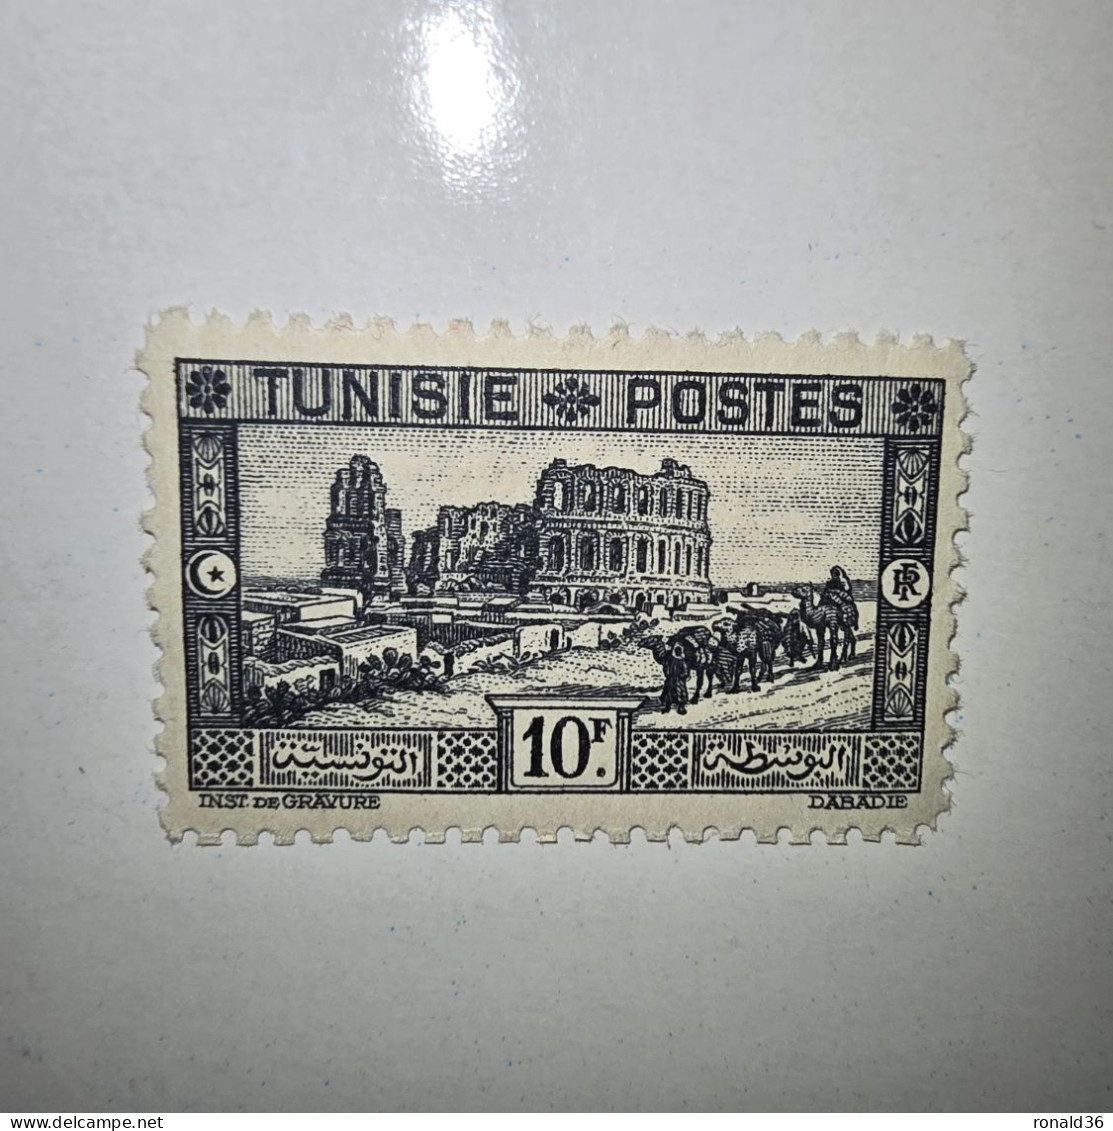 TUNISIE POSTES N° 179 10 Francs Noir F 1888 1938 FRANCE Timbre Poste Francais Ex Colonie Française Protectorat - Ungebraucht